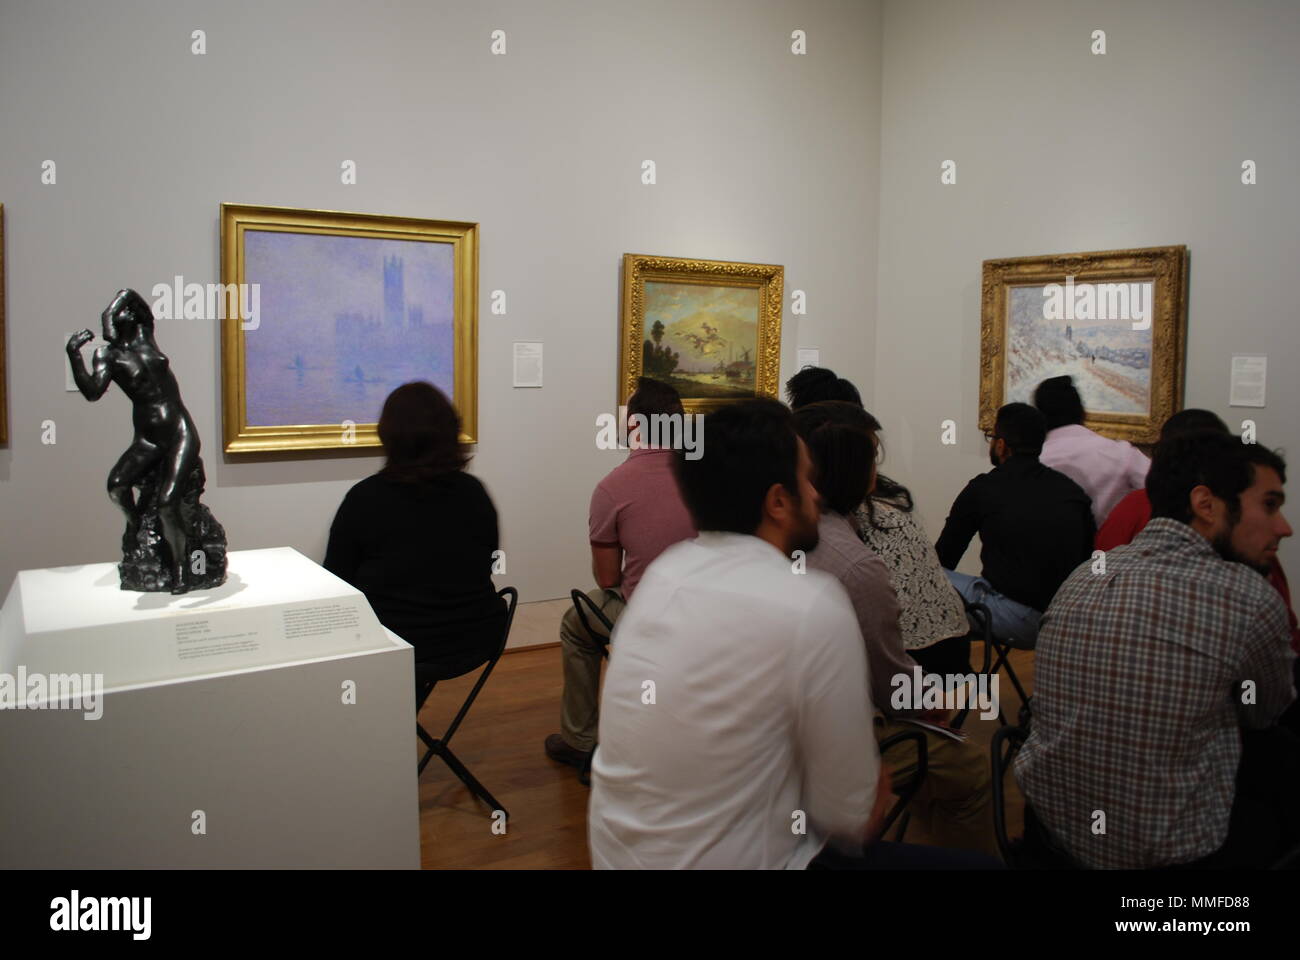 Grupo de adultos en el museo de arte. Gente sentada mirando en una famosa pintura artística. Grupo multirracial de la población de estudio. La curiosidad, el concepto de la educación. Foto de stock